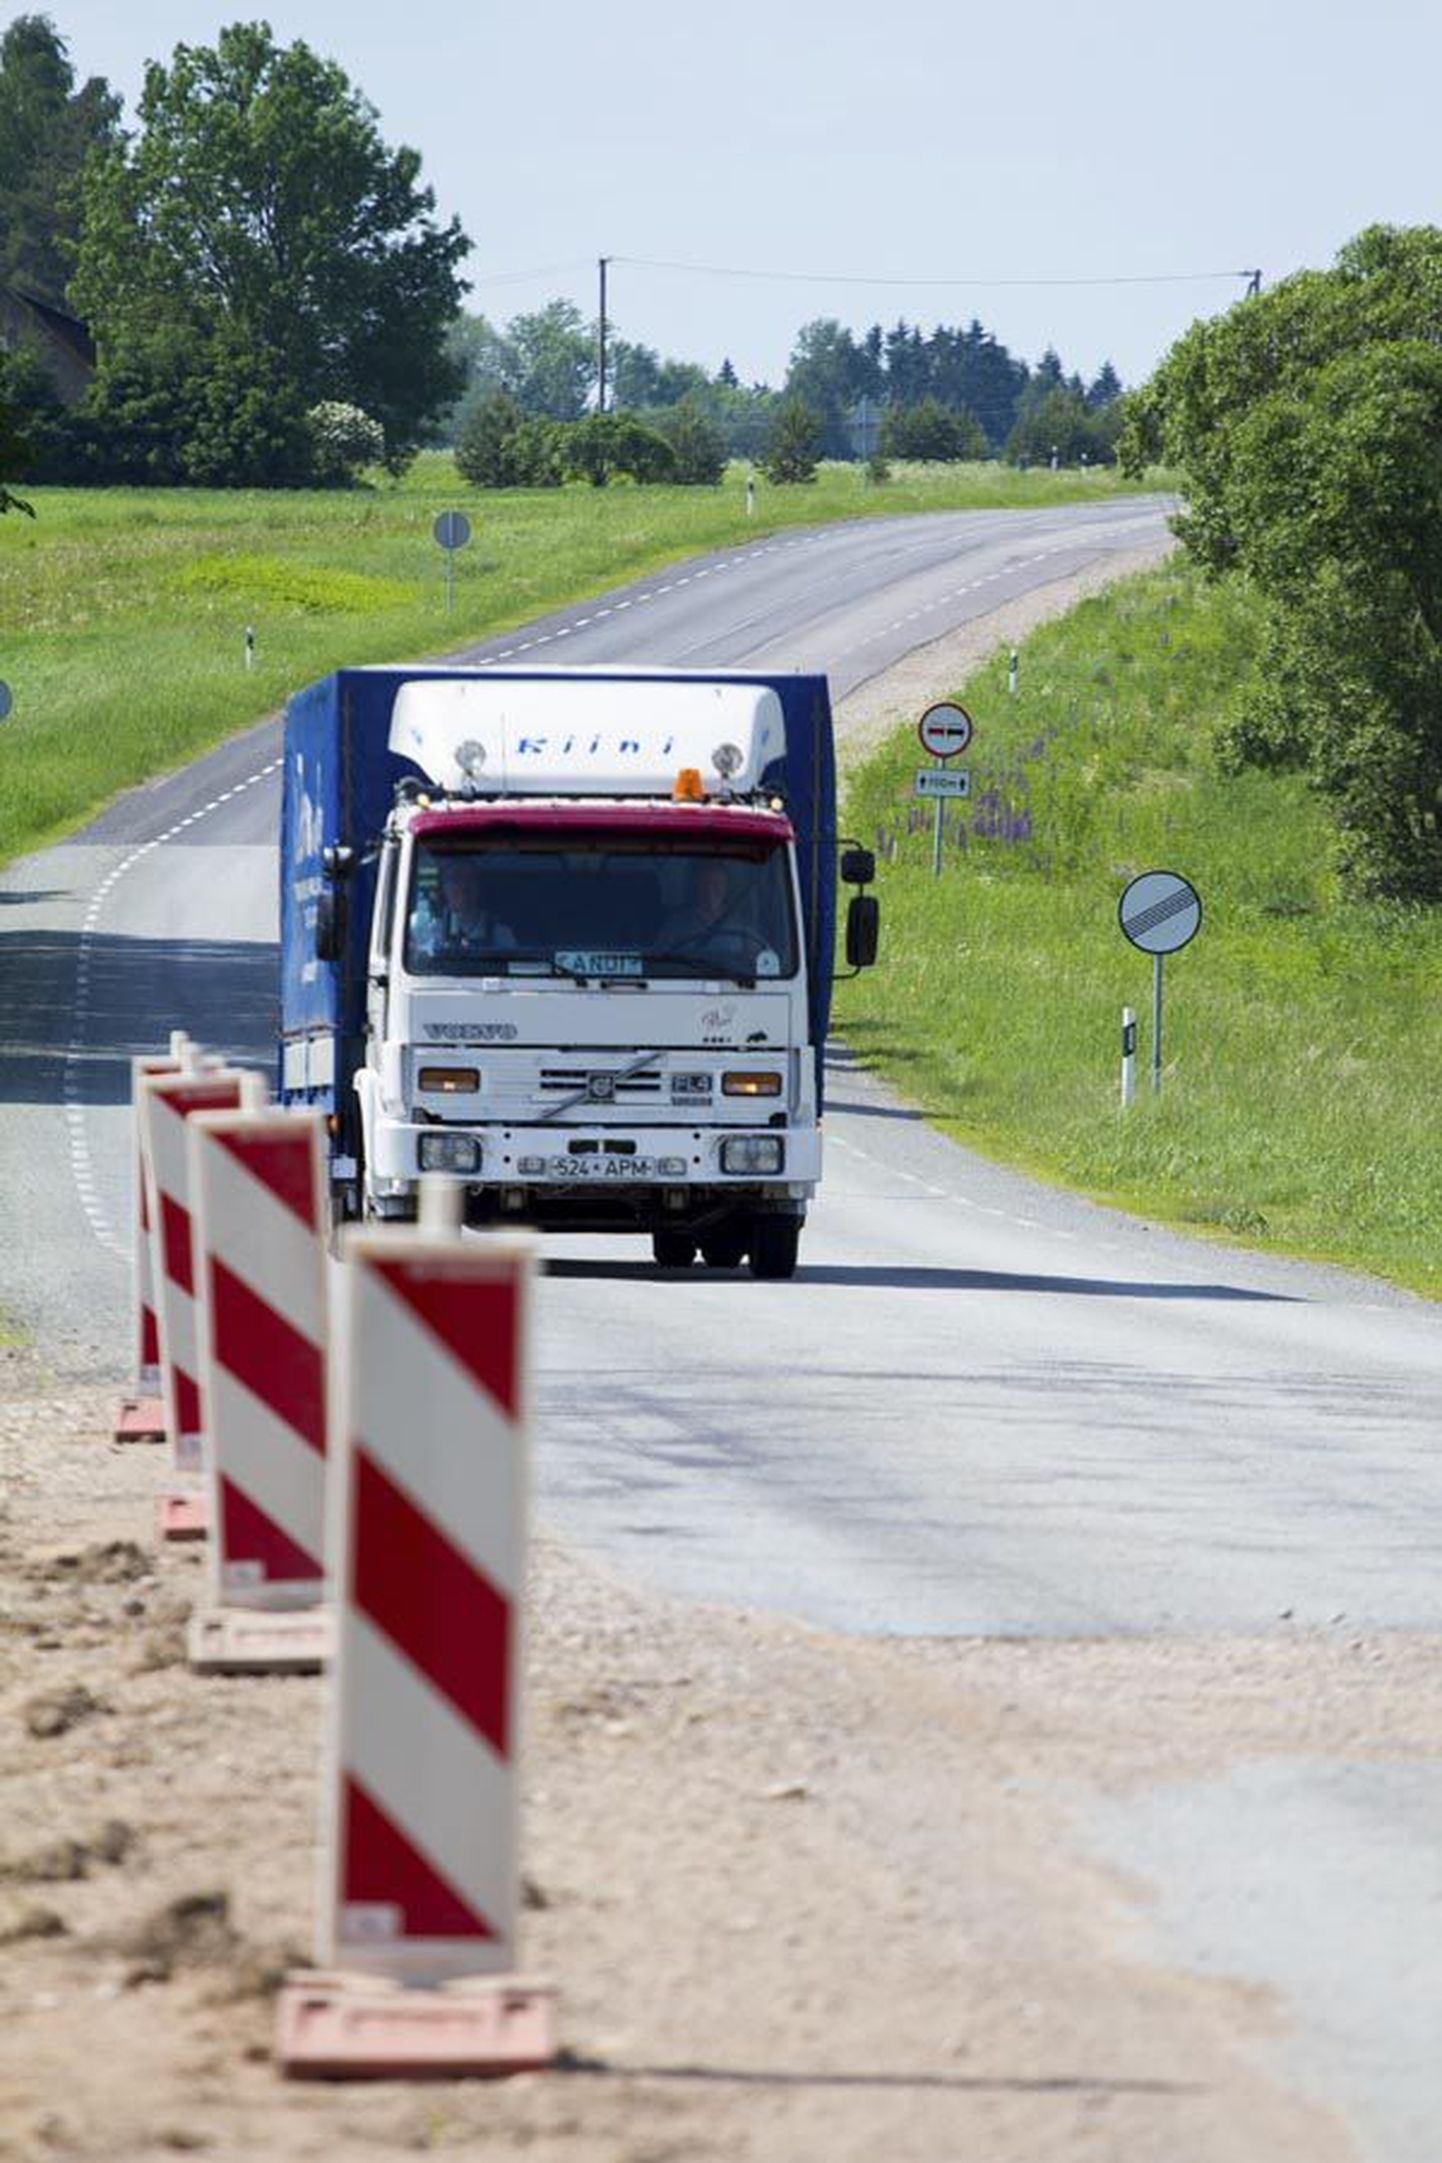 Riigimaantee number 49 Imavere–Viljandi–Karksi-Nuia teelõigul, kus 75,68. kilomeetril asub Saviaru sild, on 2012. aastal mõõdetud ööpäevaseks liiklussageduseks 1026 autot. Raskeliiklus moodustab sellest kümme protsenti.